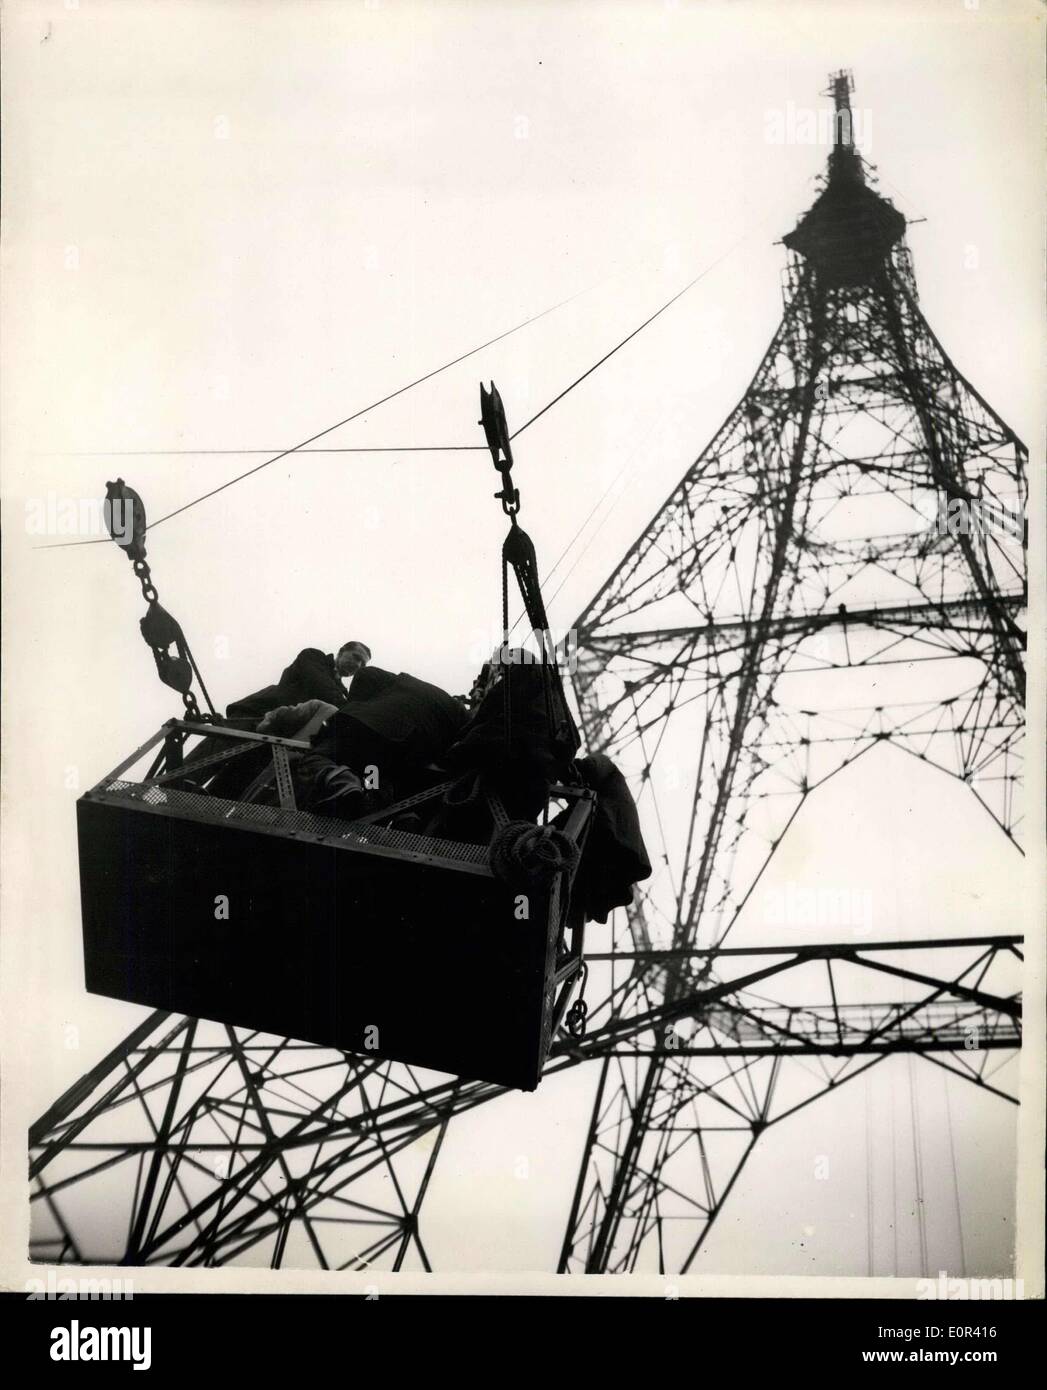 Nov. 20, 1957 - Prova la nuova televisione B.B.C montante di sollevamento con l'ausilio di razzi al Crystal Palace: la nuova televisione B.B.C montante che è 709 ft. alta ha subito una prova aerodinamica oggi quando una batteria di dieci razzi montati sulla torre ad una altezza di 625 metri sopra il livello del terreno e sparato in sequenza. I razzi erano una fixture e quando sparò ciascuno ha creato una spinta di una mezza tonnellata. Qualsiasi movimento della torre essendo registrata su apparecchiature elettroniche in un laboratorio mobile. Le prove sono state condotte in collaborazione con il National laboratorio fisico reale e la creazione di aeromobili Foto Stock